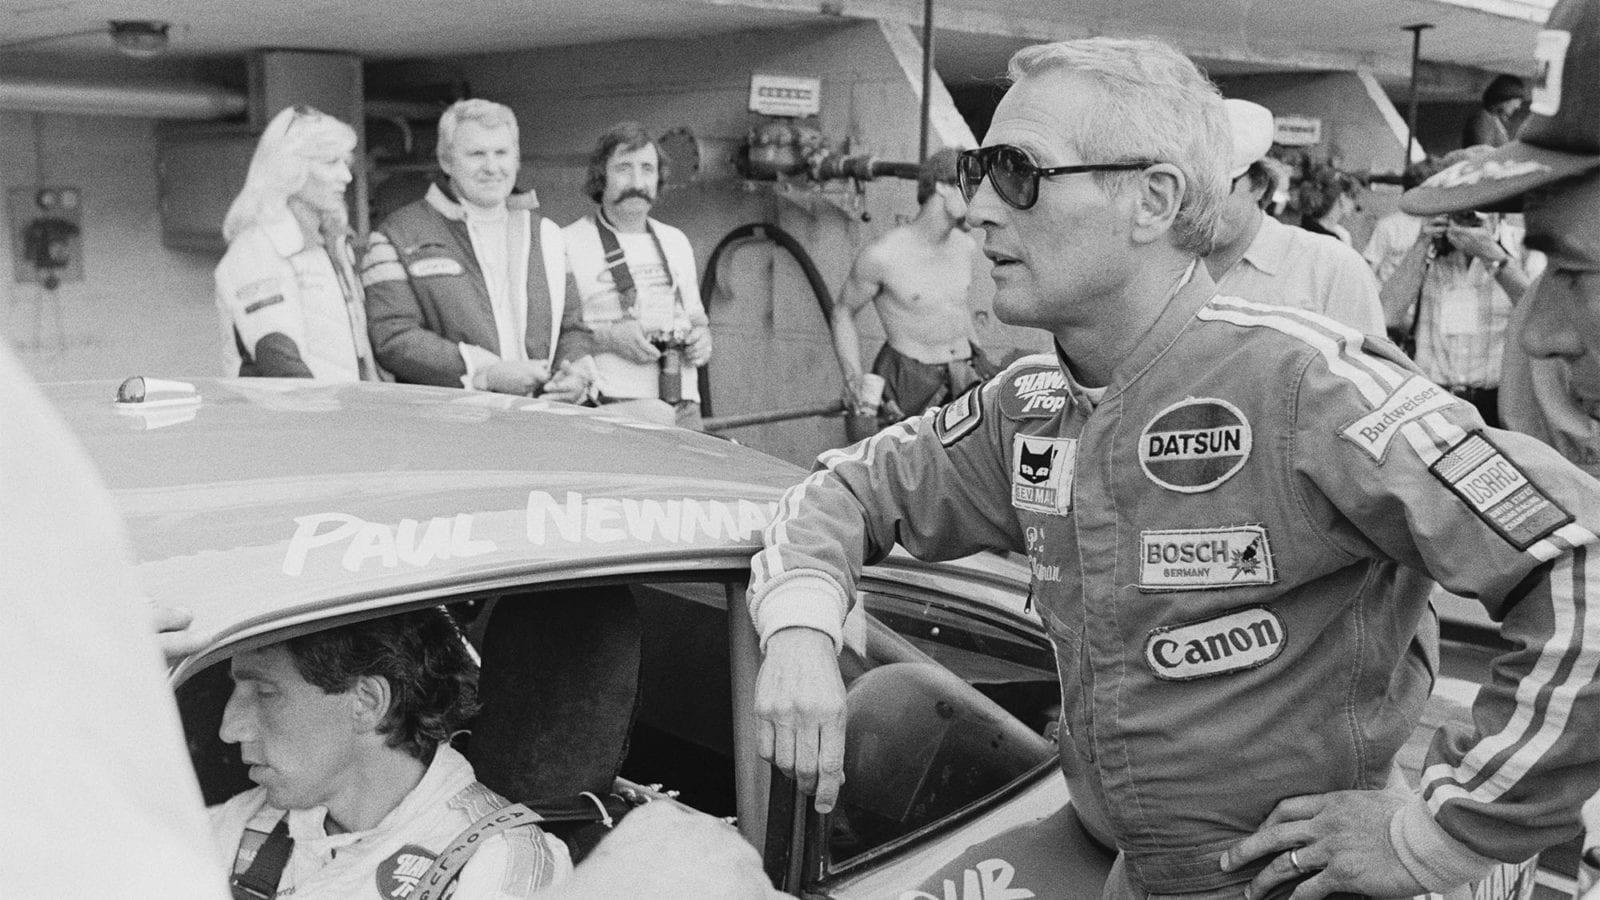 Paul Newman Le Mans 1979